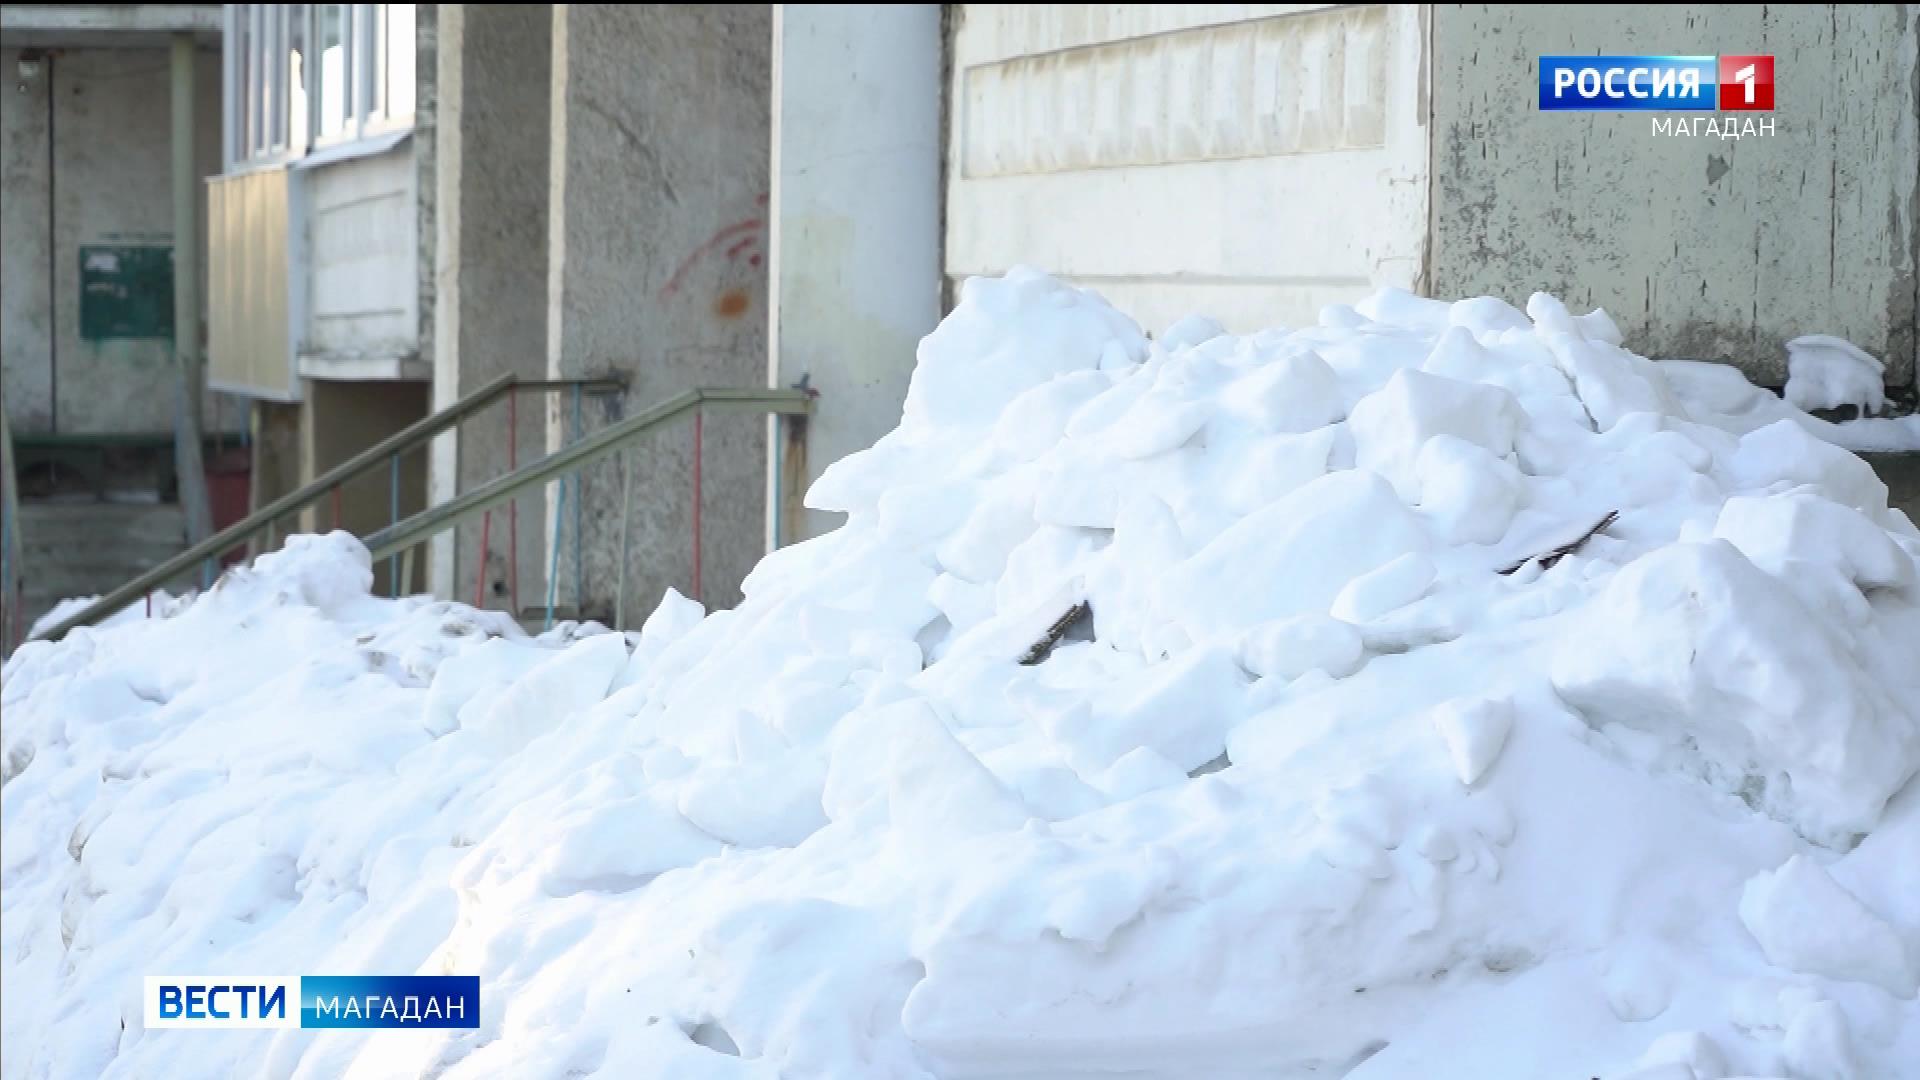 Экстренно расчистить дворы Магадана от снега требуют в региональном ОНФ